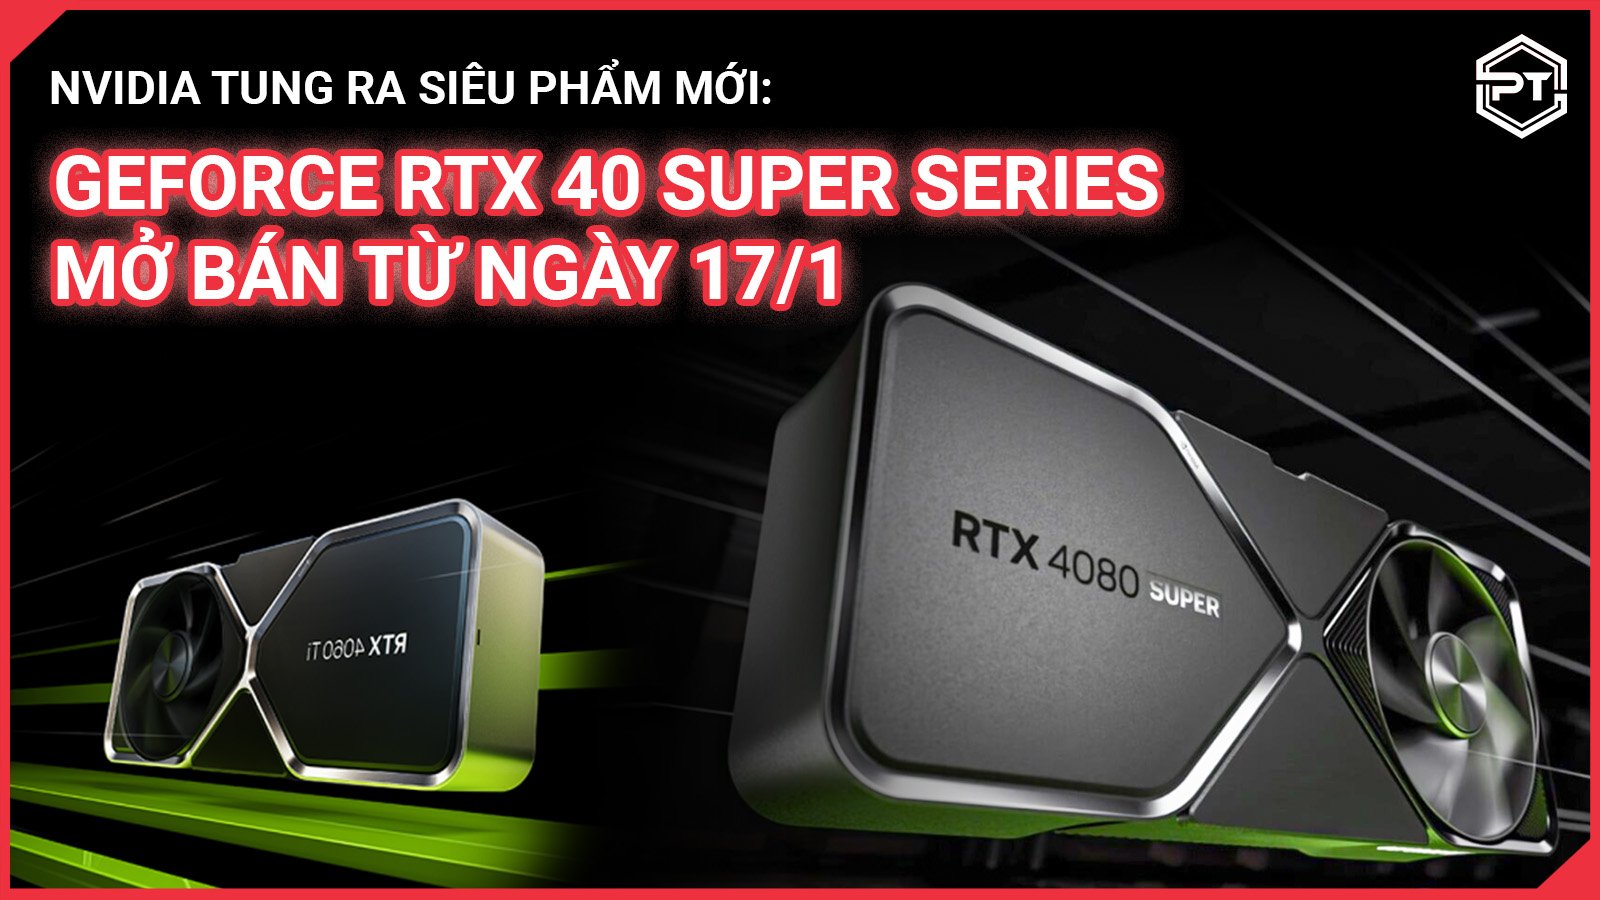 NVIDIA tung ra siêu phẩm mới: GeForce RTX 40 SUPER Series mở bán từ ngày 17/1